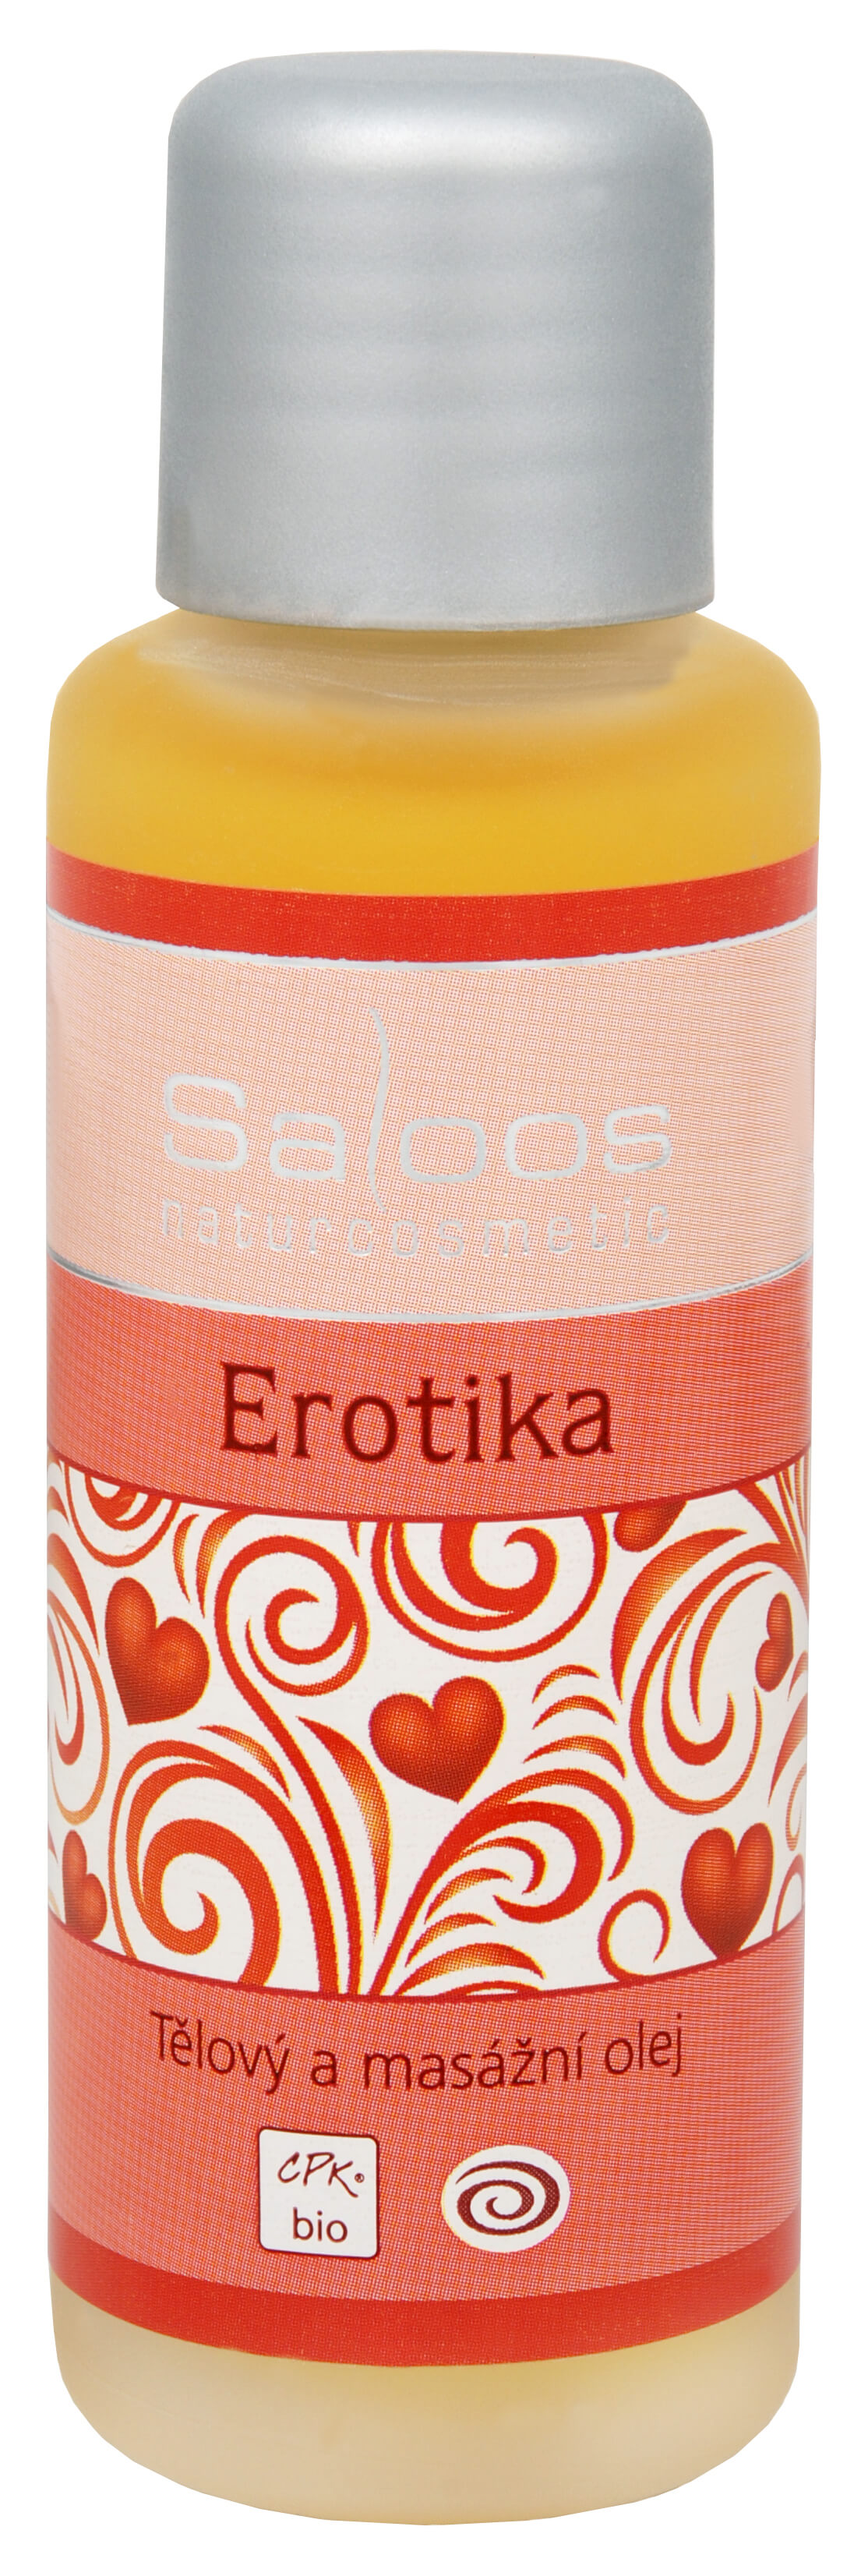 Zobrazit detail výrobku Saloos Bio tělový a masážní olej - Erotika 500 ml